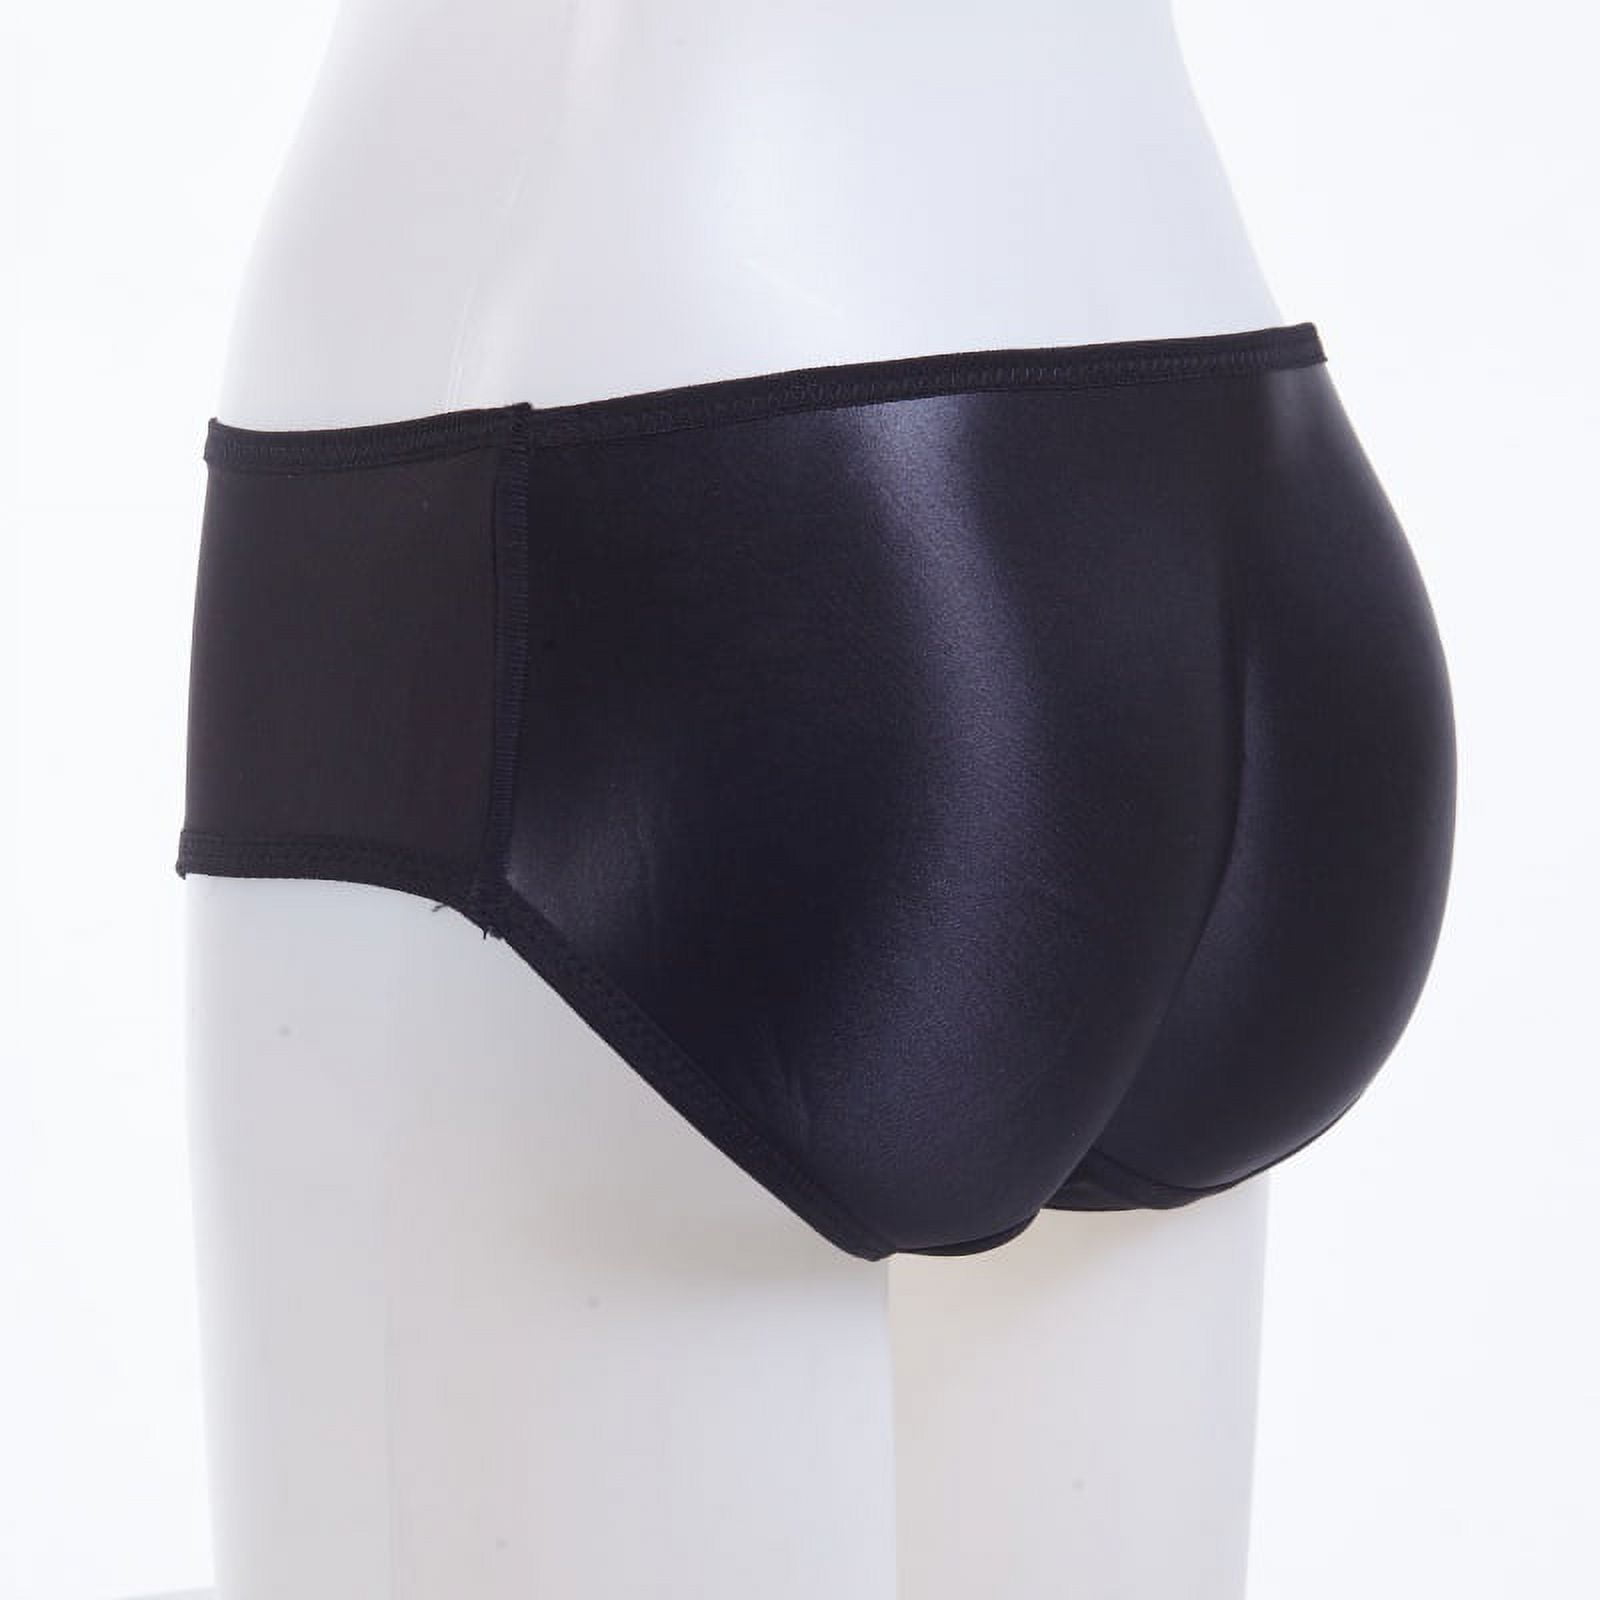 Women's Padded Underwear Butt Enhancer Pads Panties (1 Pack